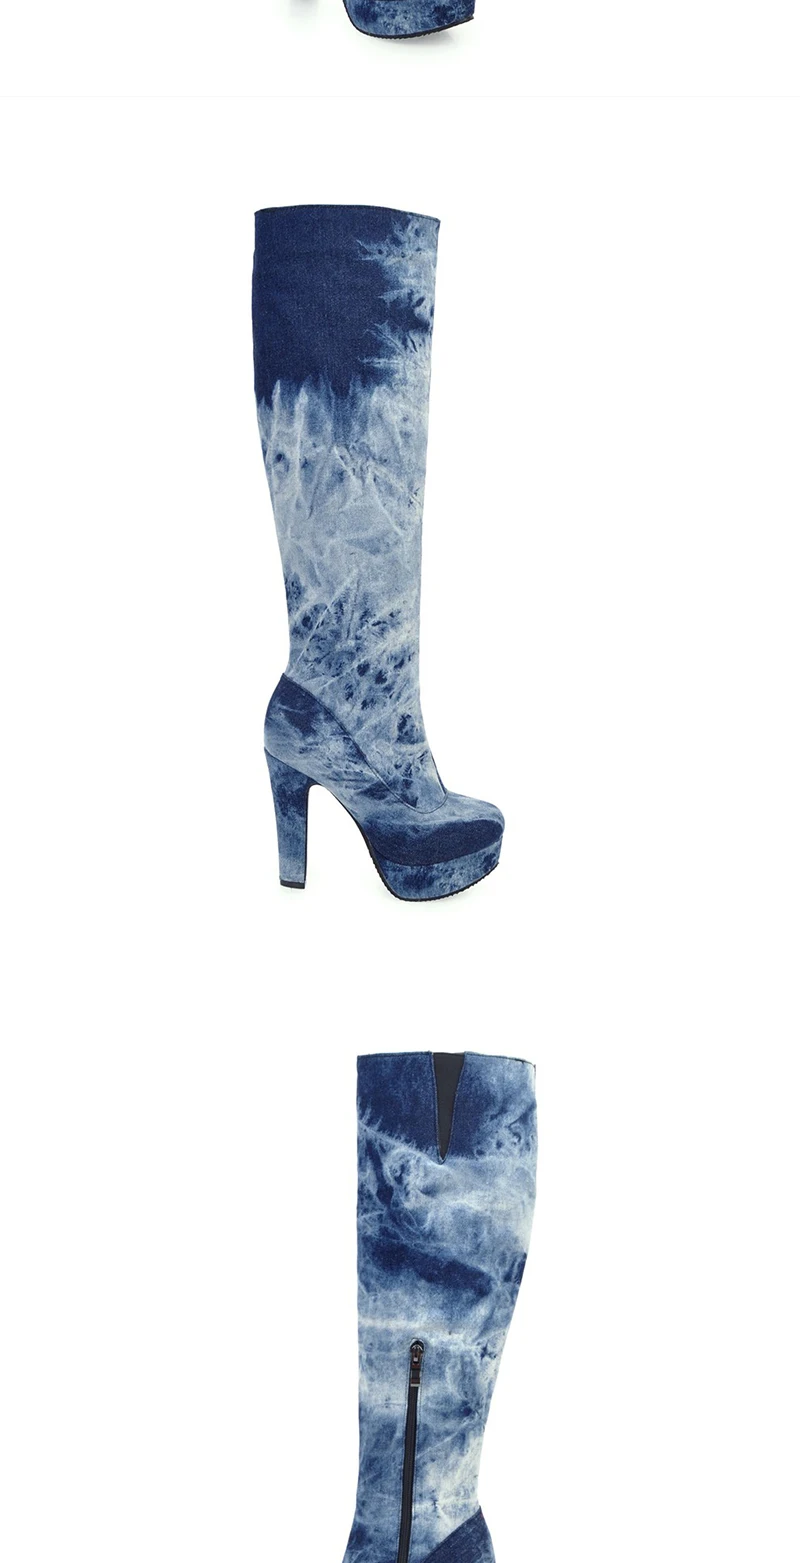 WETKISS/большой Размеры 33-50 джинсовые сапоги Женская мода Джинсы Обувь для Для женщин на высоком каблуке зимние сапоги на платформе Цветной на молнии